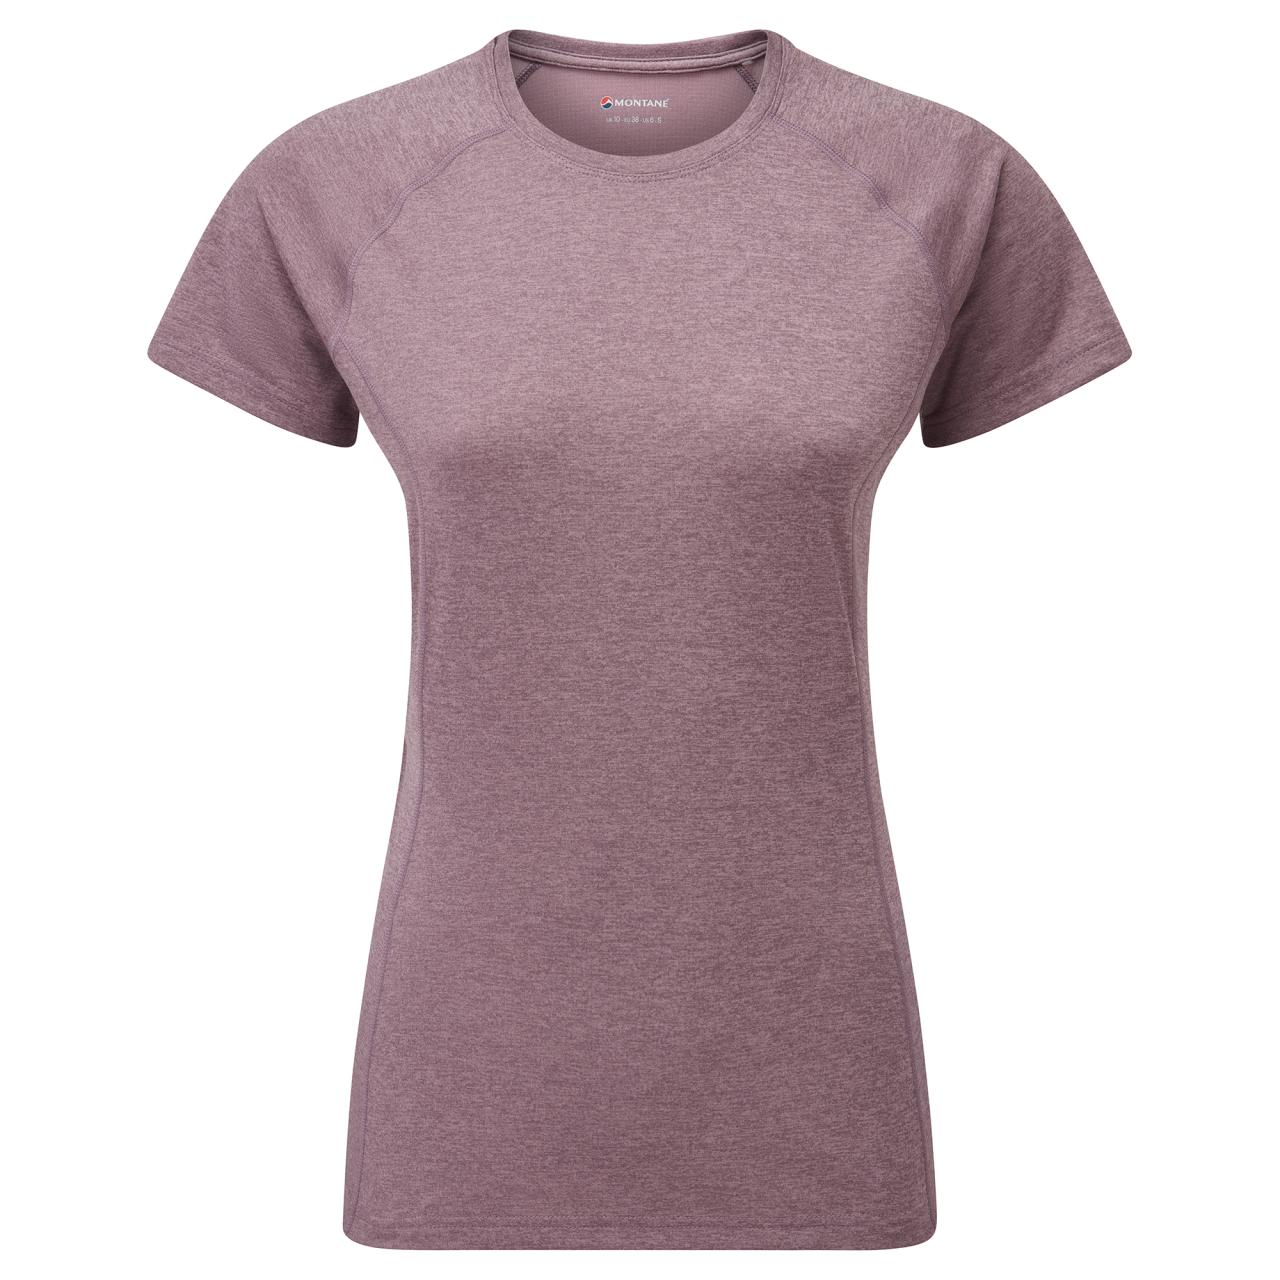 FEM DART T-SHIRT-MOONSCAPE-UK16/XL dámské triko šedofialové